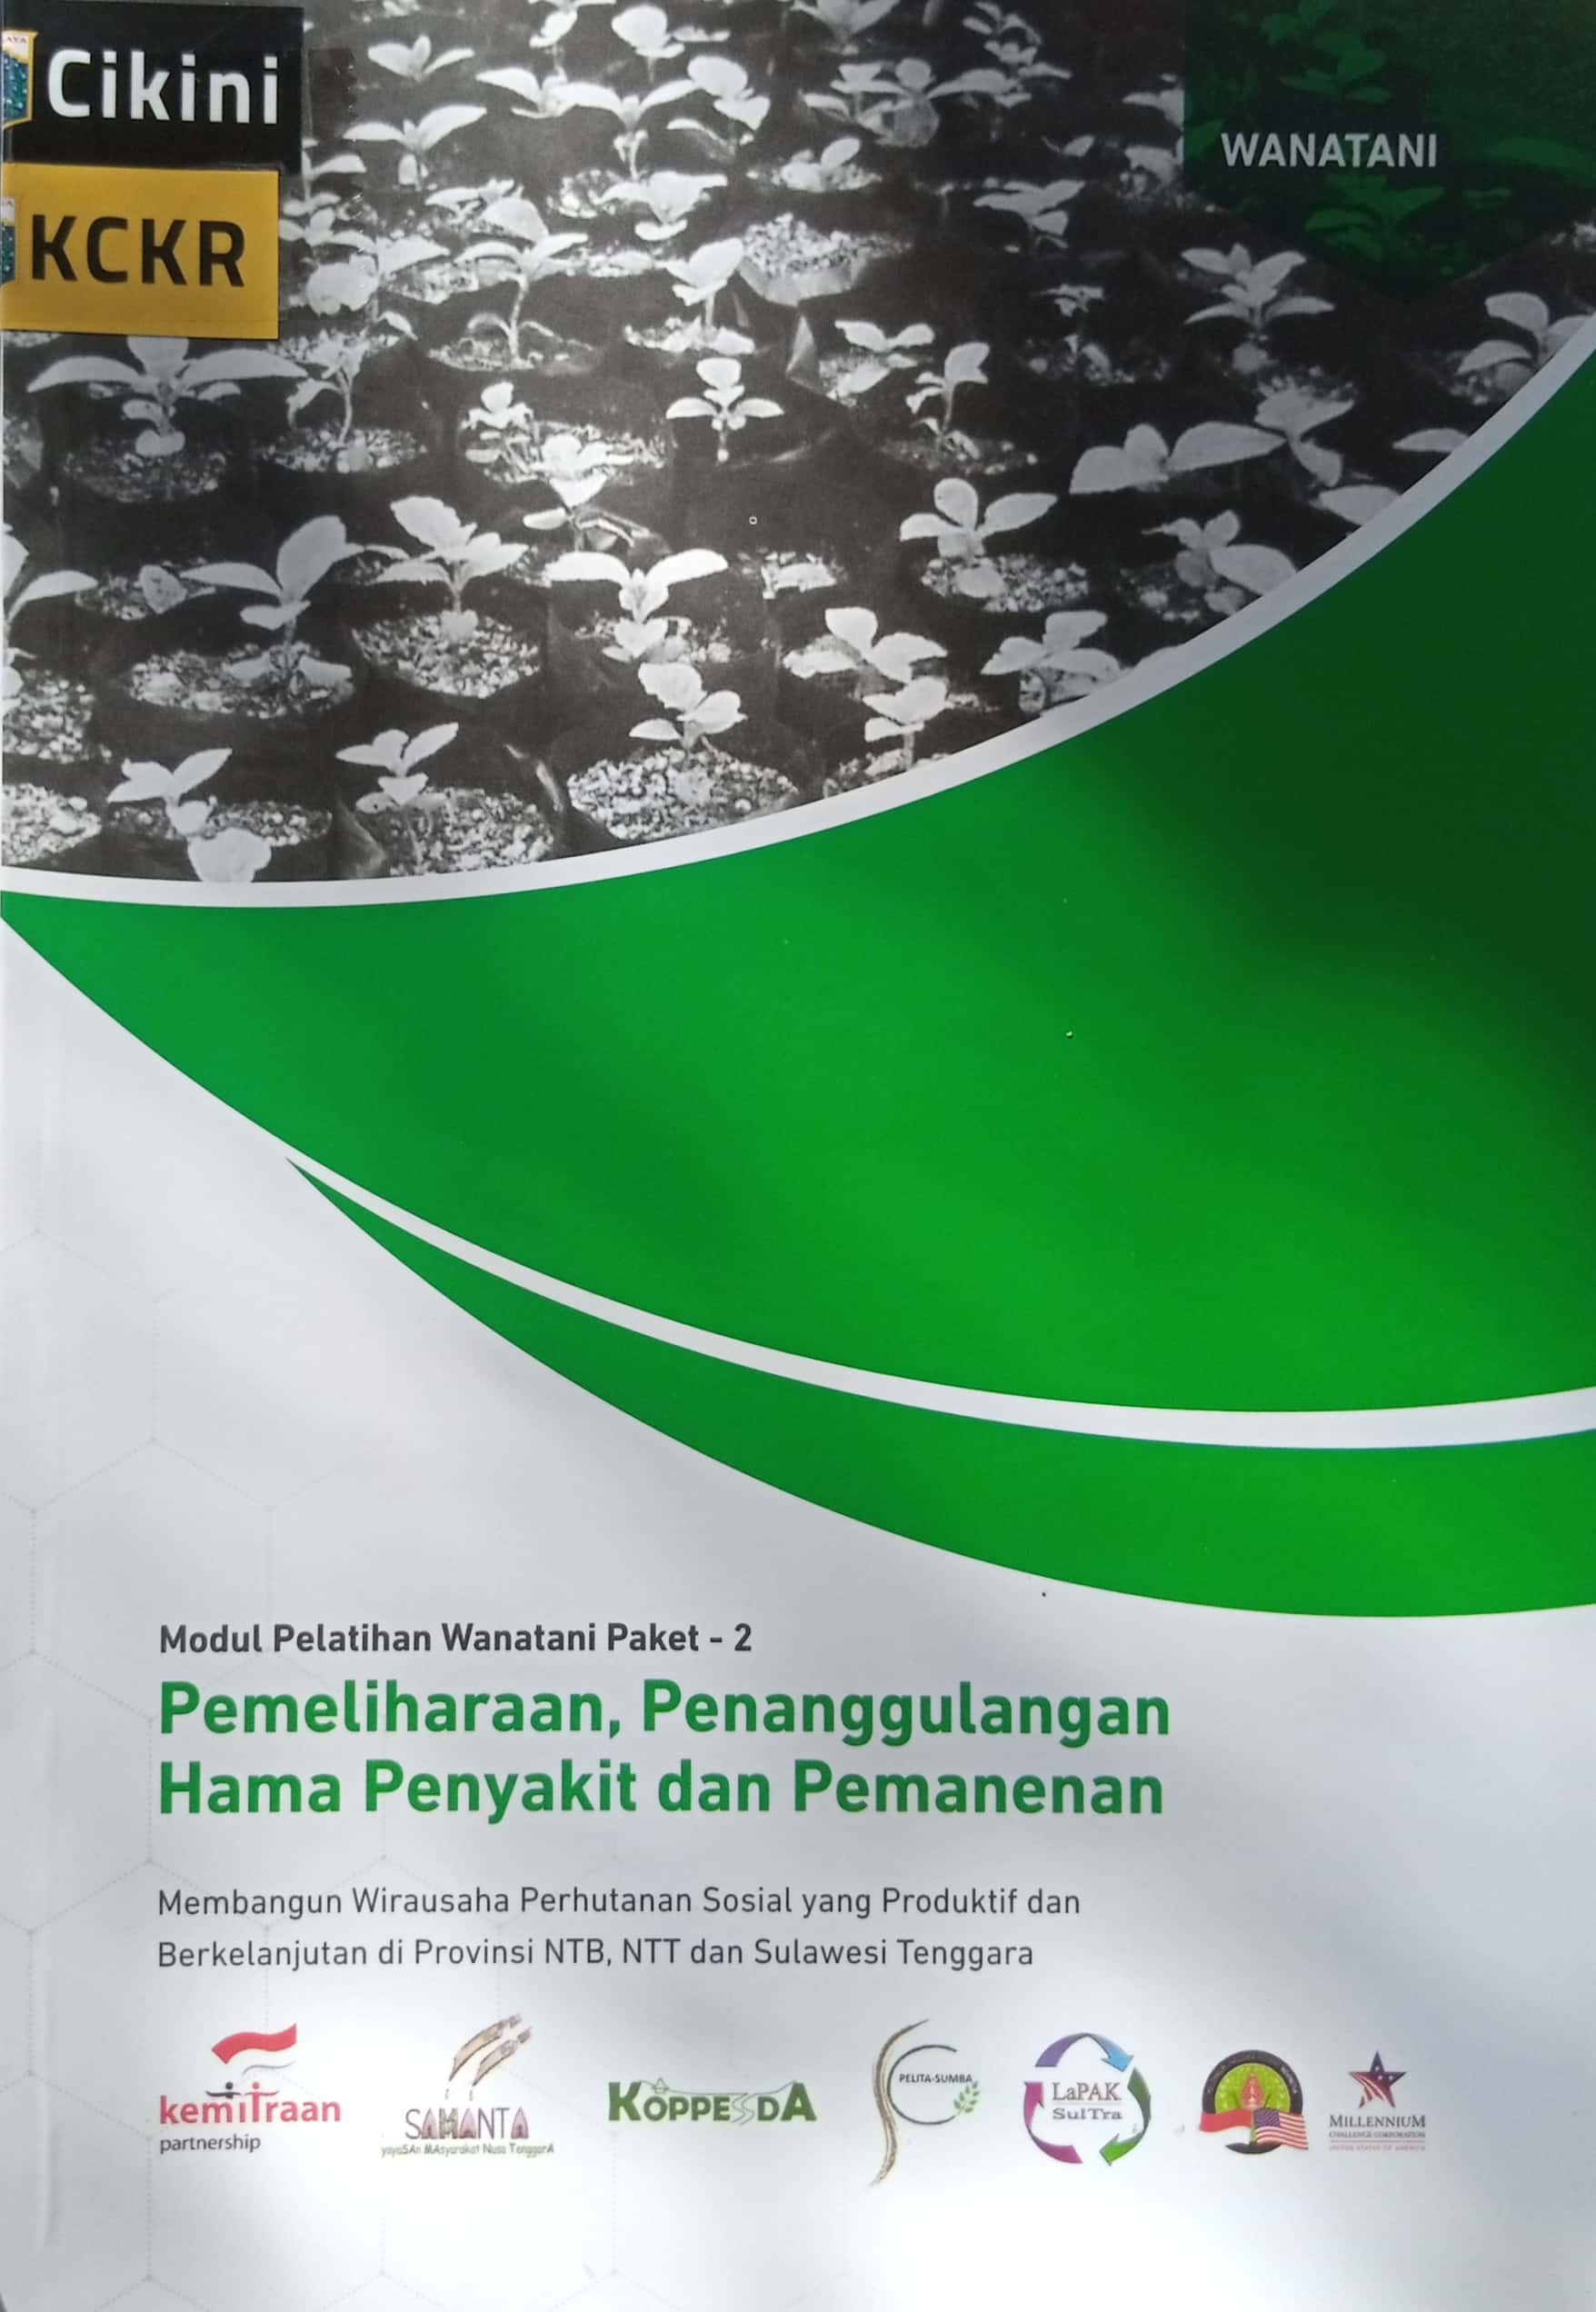 Pemeliharaan, penanggulangan hama penyakit dan pemanenan : membangun wirausaha perhutanan sosial yang produktif dan berkelanjutan di provinsi NTB, NTT dan Sulawesi Tenggara